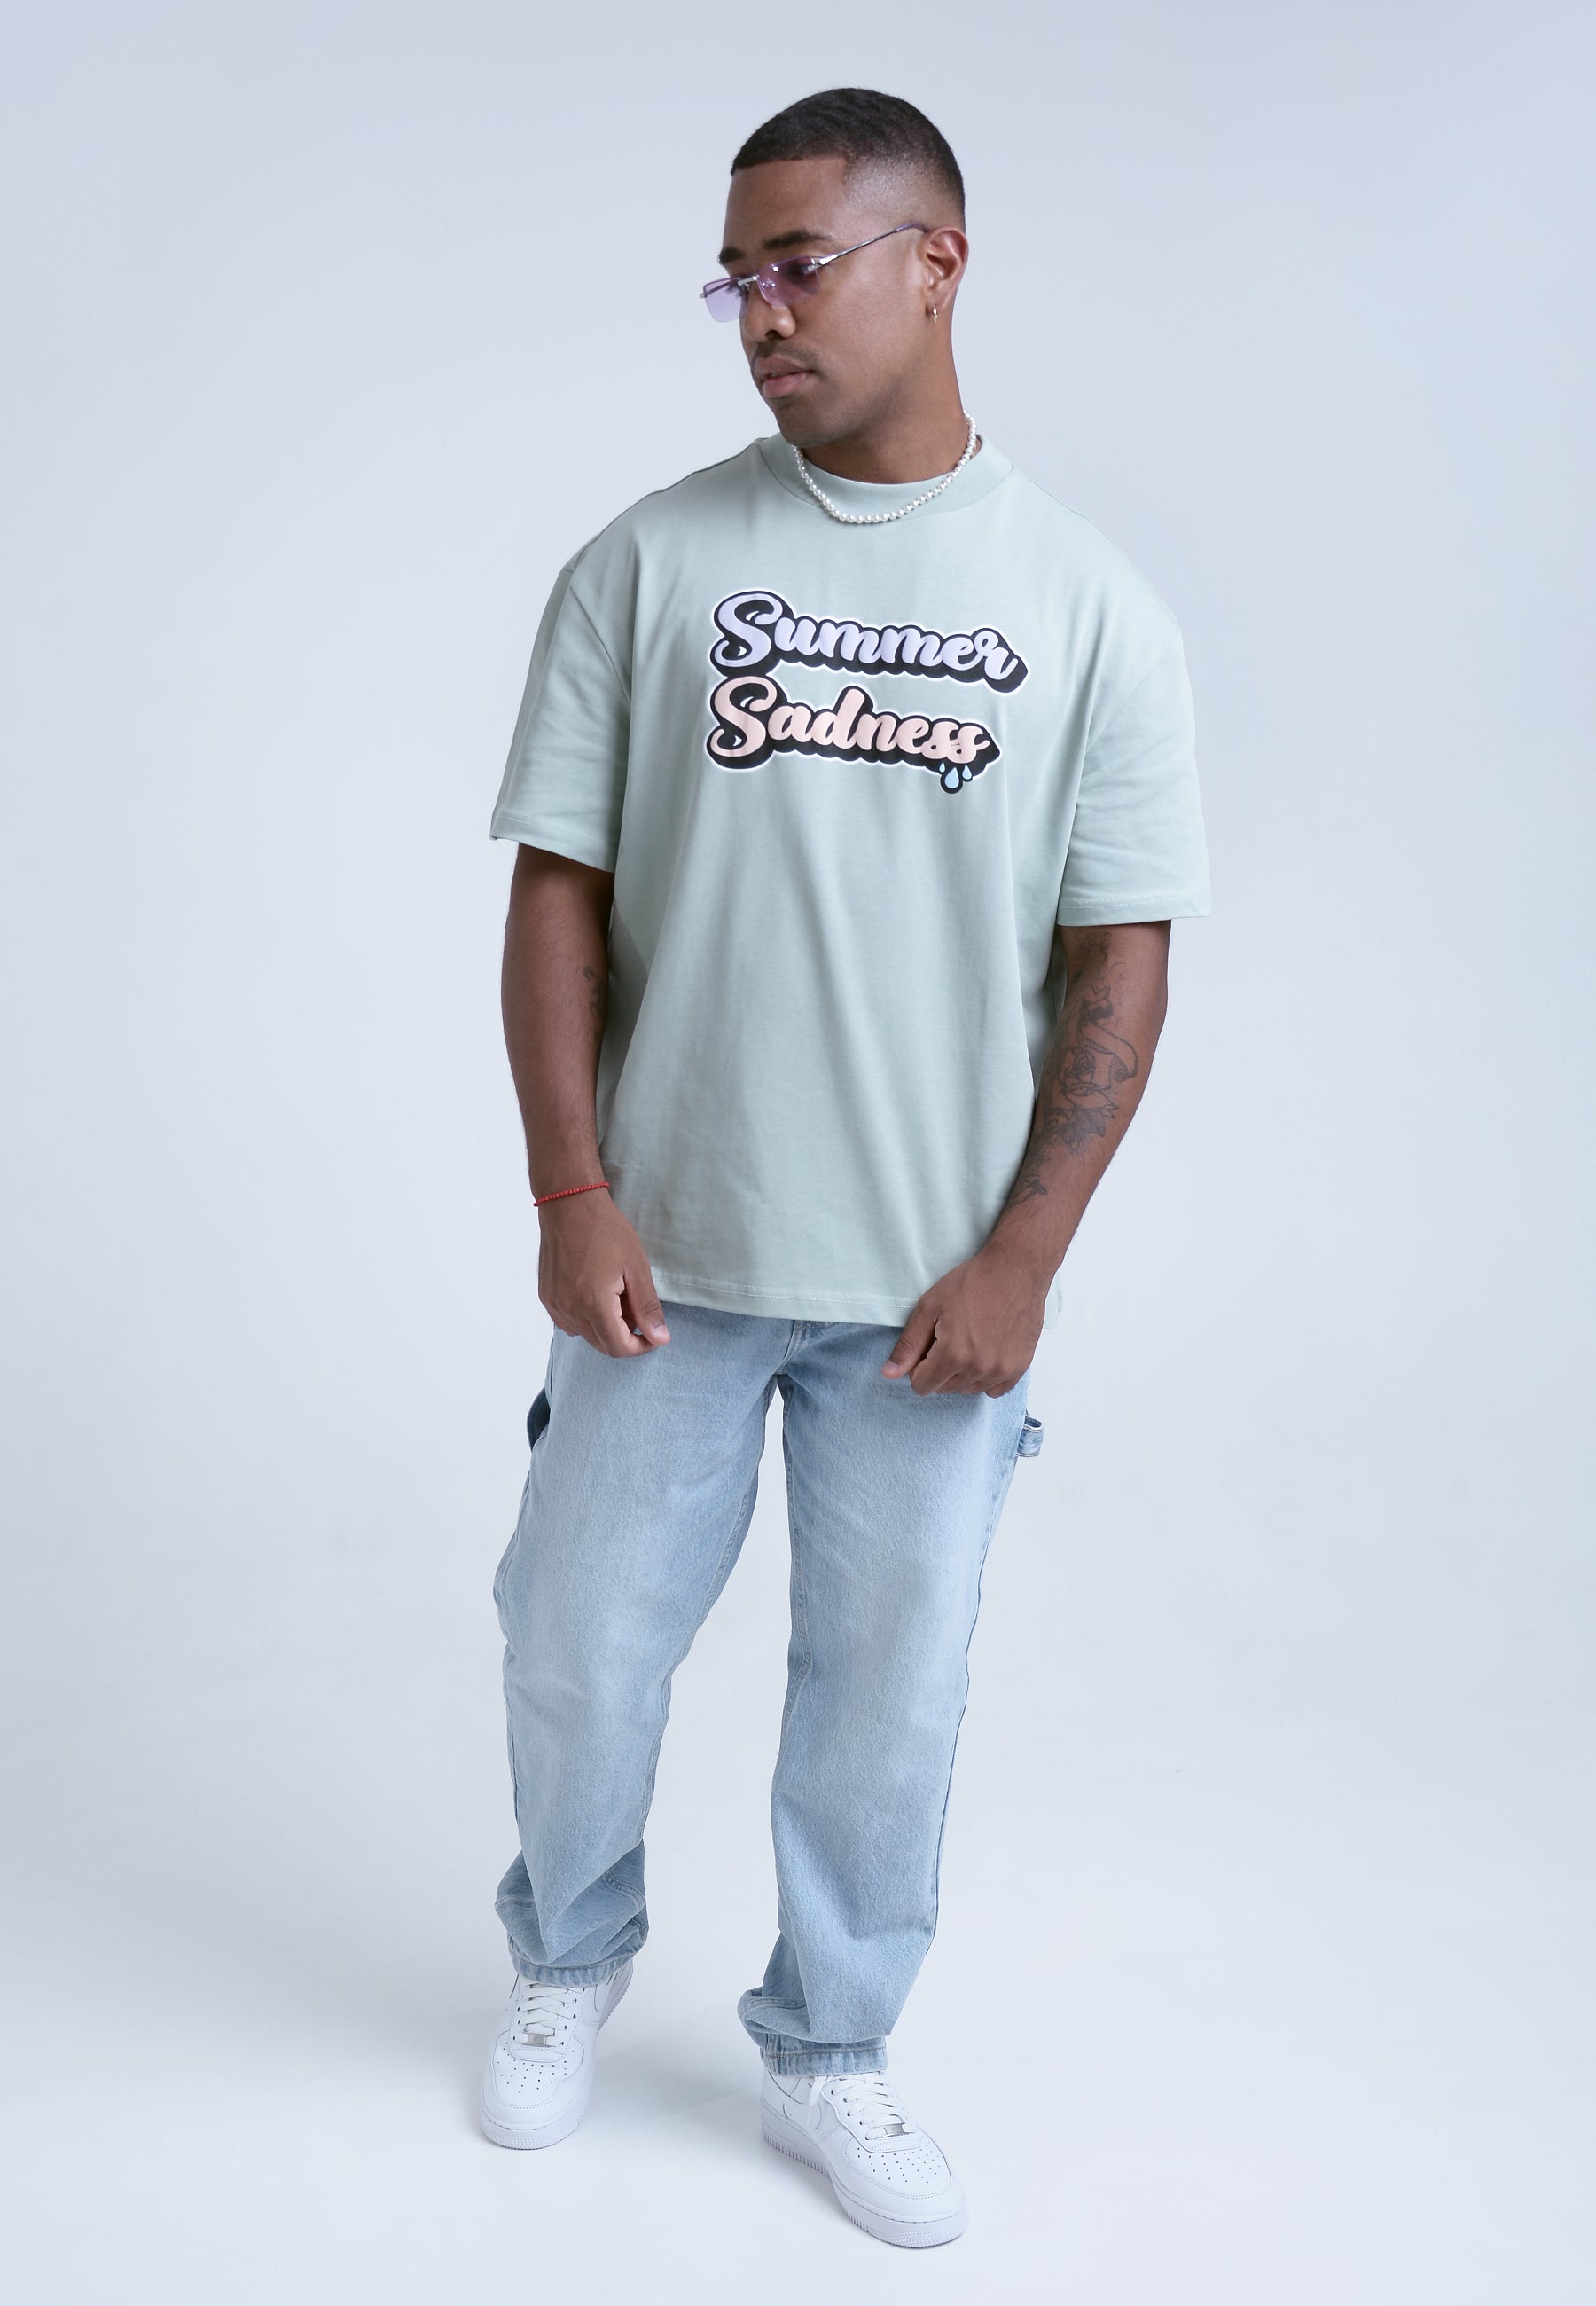 RYWD Summer Sadness Heartbreaks T-Shirt mint 4 unisex oversize streetwear